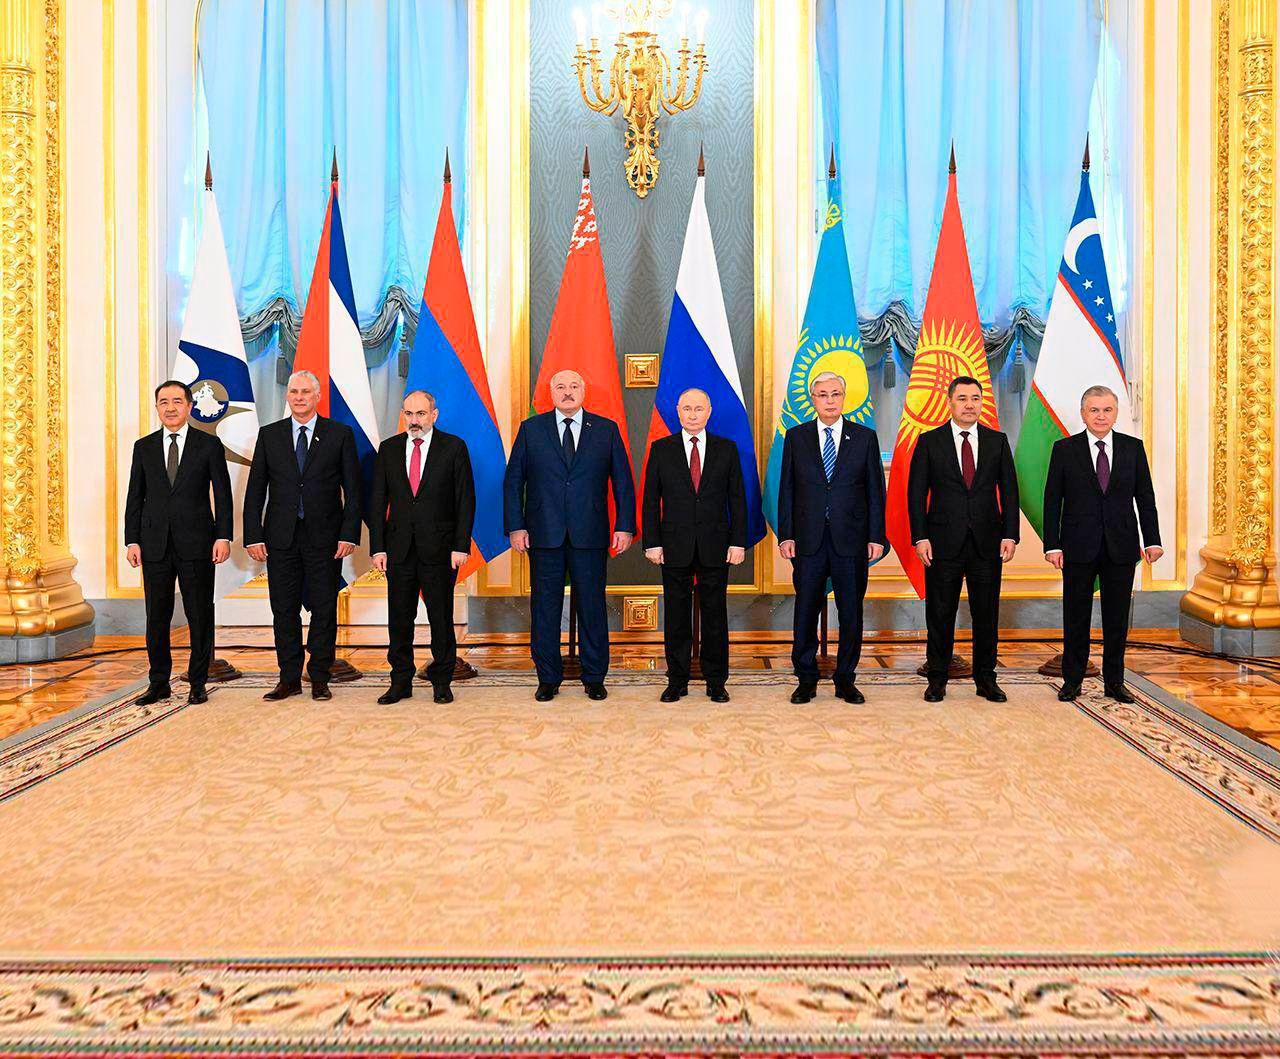 Шавкат Мирзиёев принял участие в юбилейном саммите Высшего Евразийского экономического совета